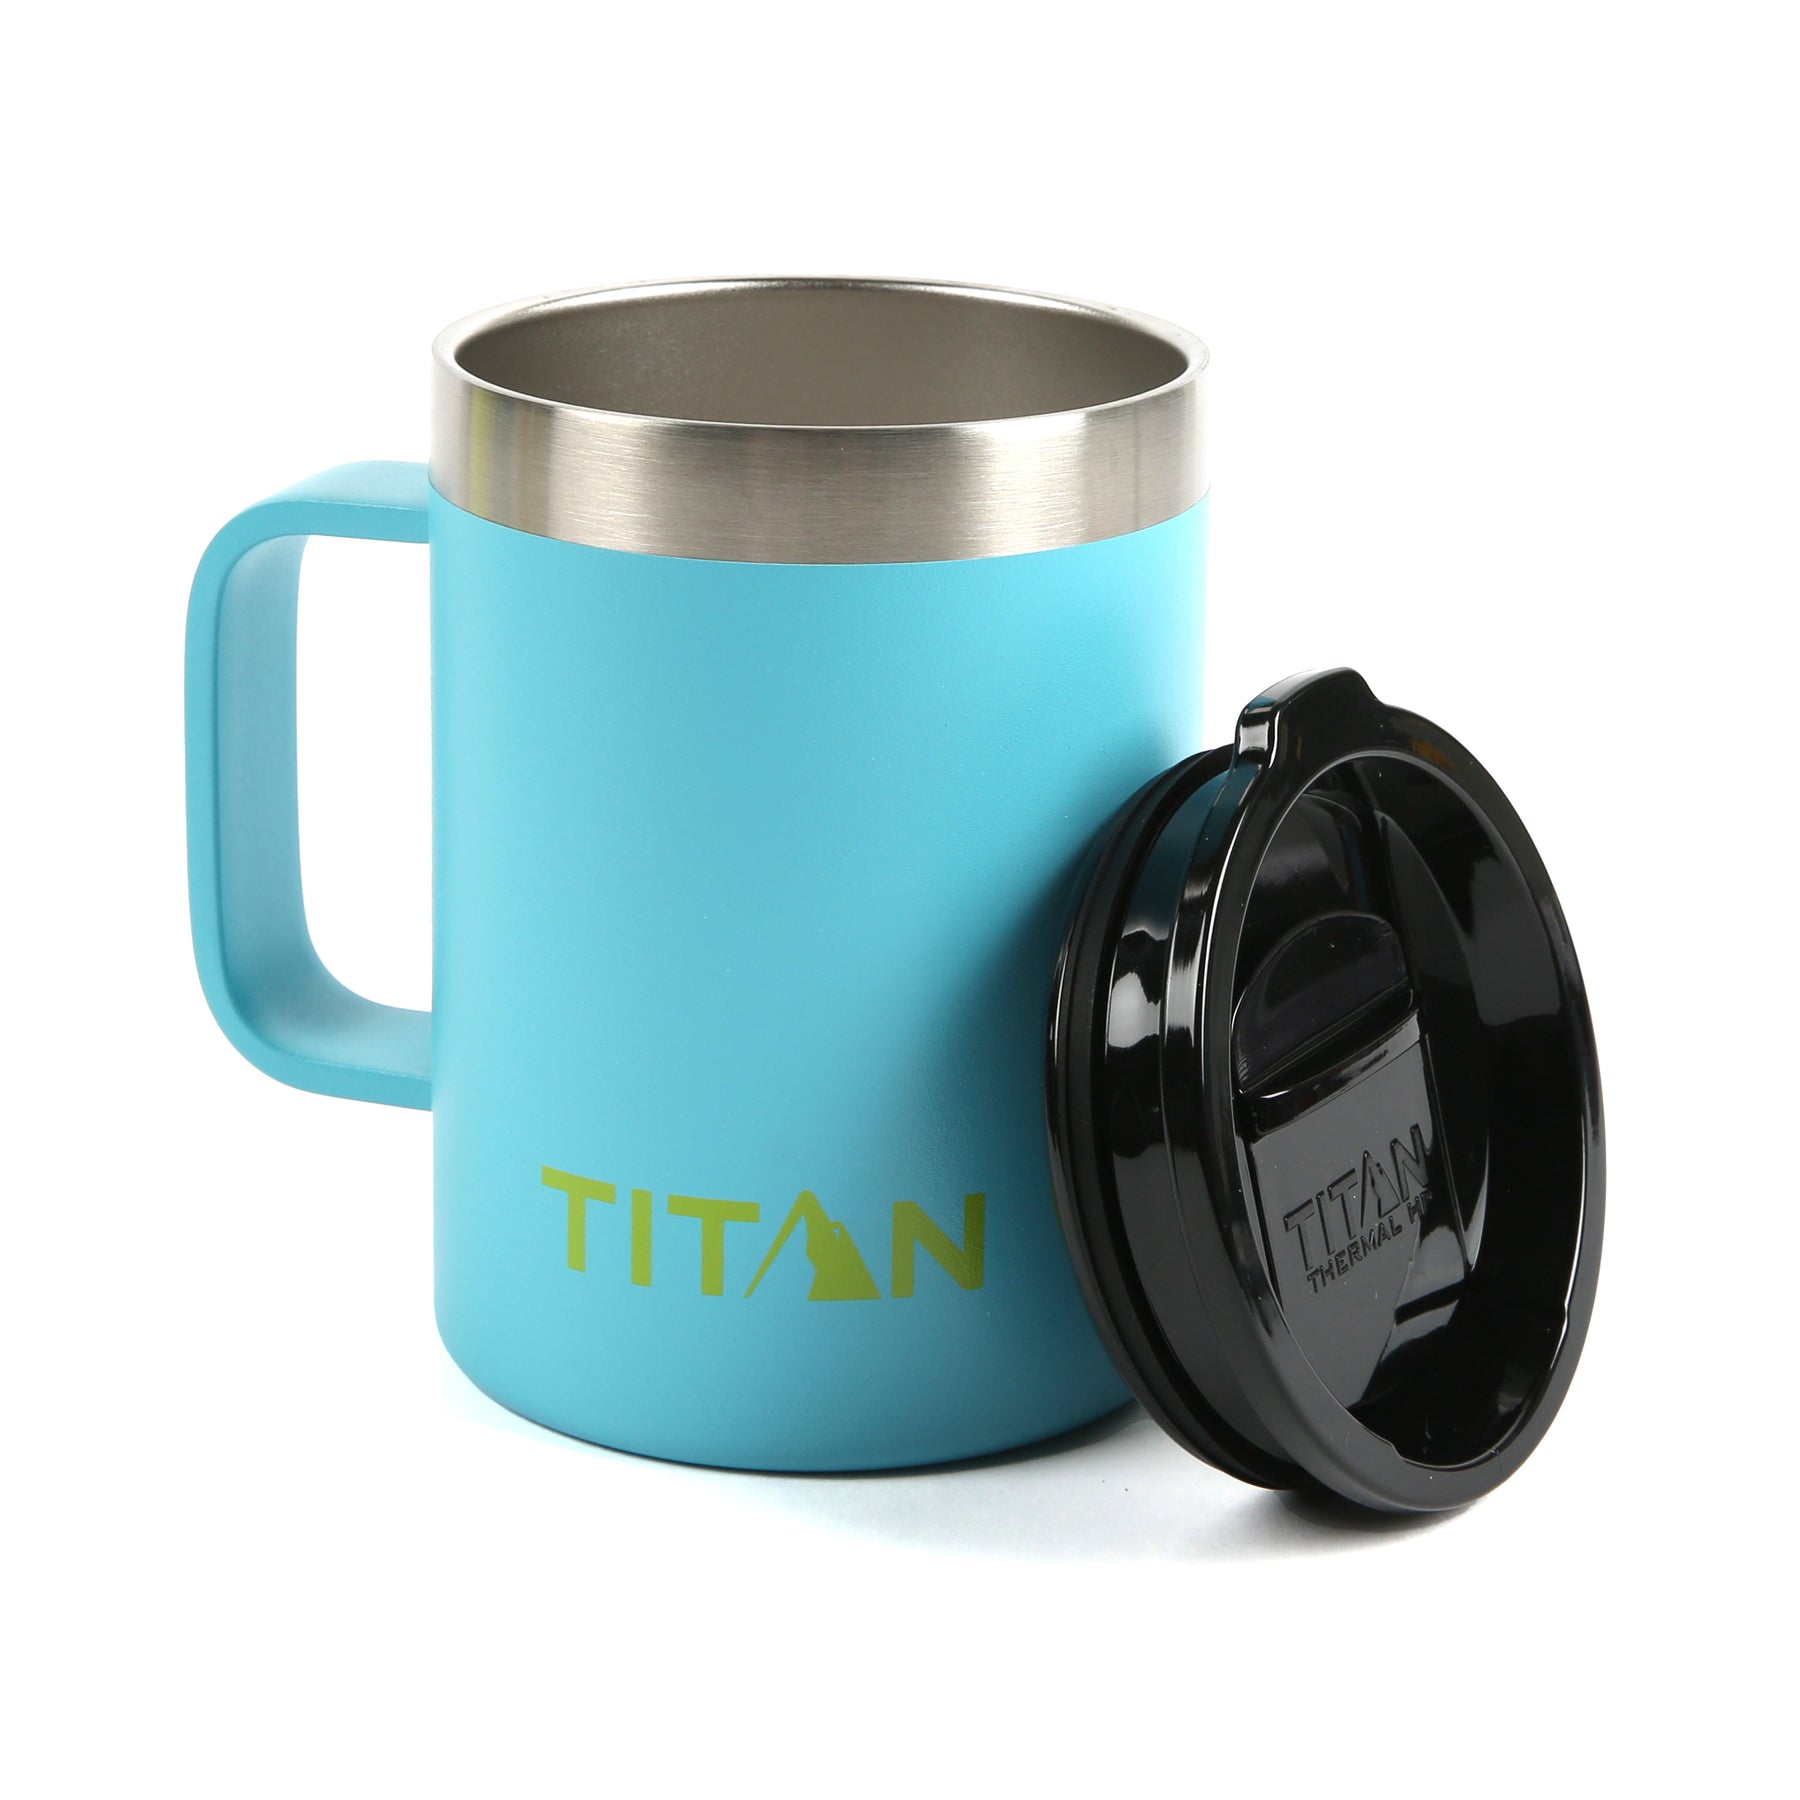 Stainless Steel Coffee Thermos Mug